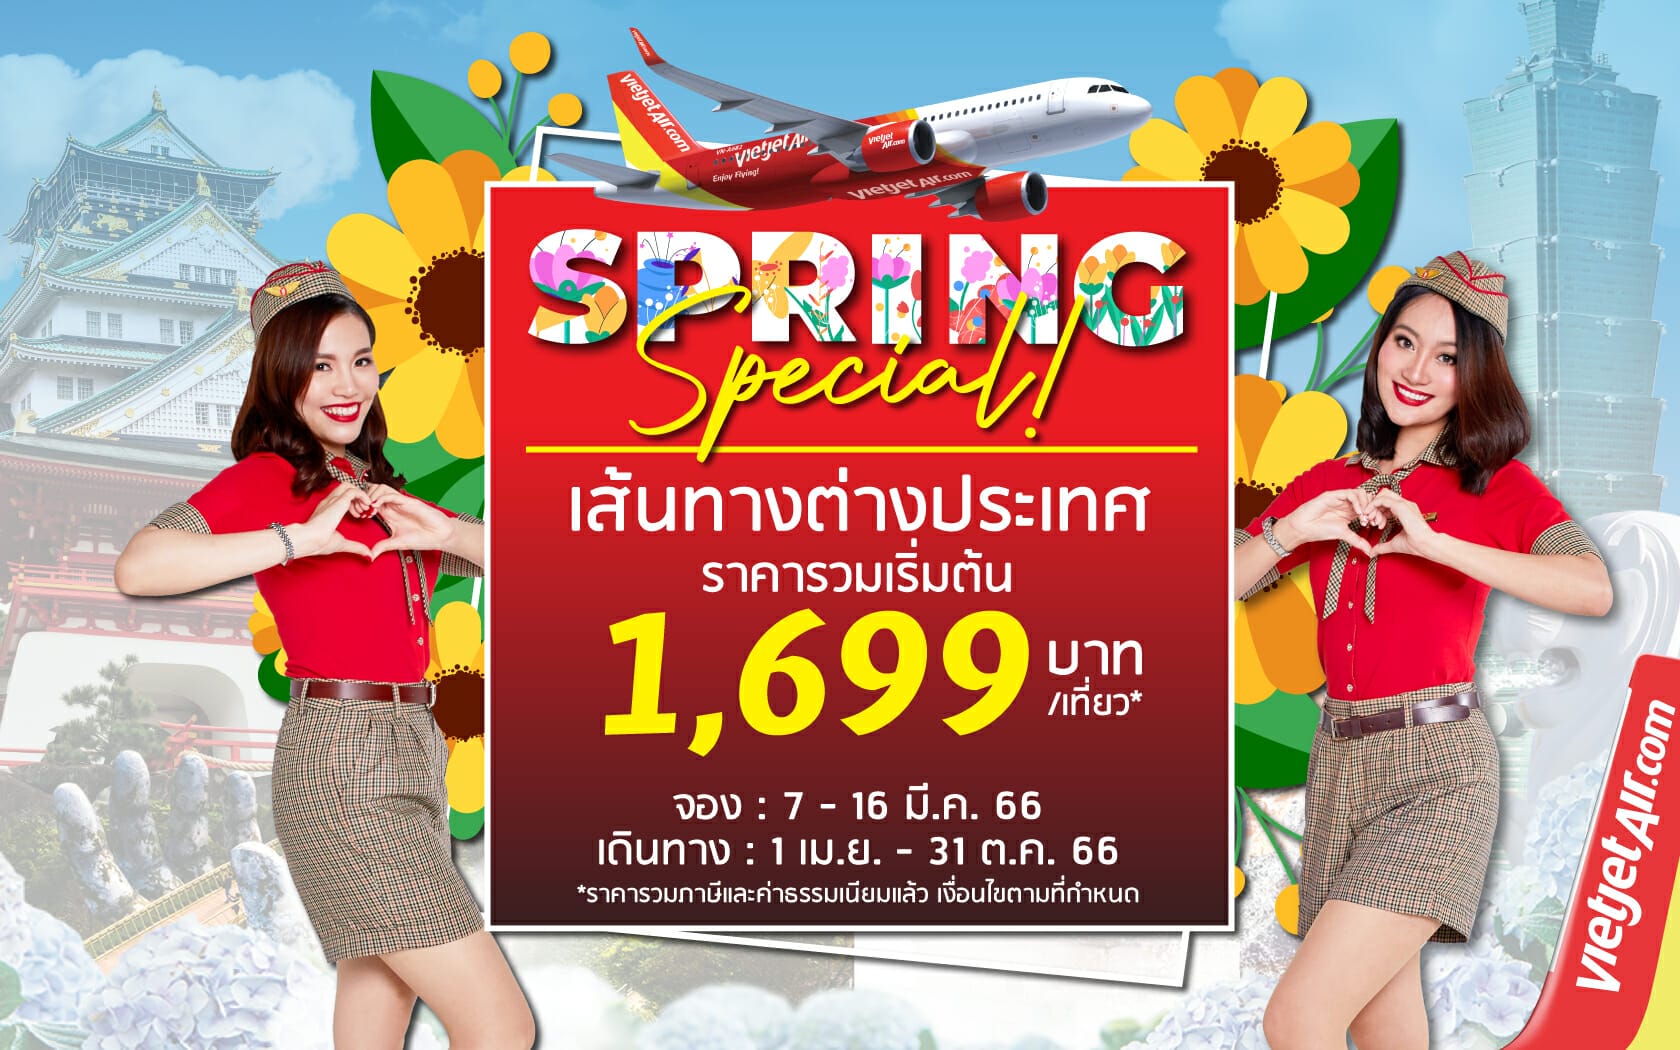 ไทยเวียตเจ็ทออกโปรฯ ‘Spring Special’ ตั๋วเริ่มต้น 1,699 บาท